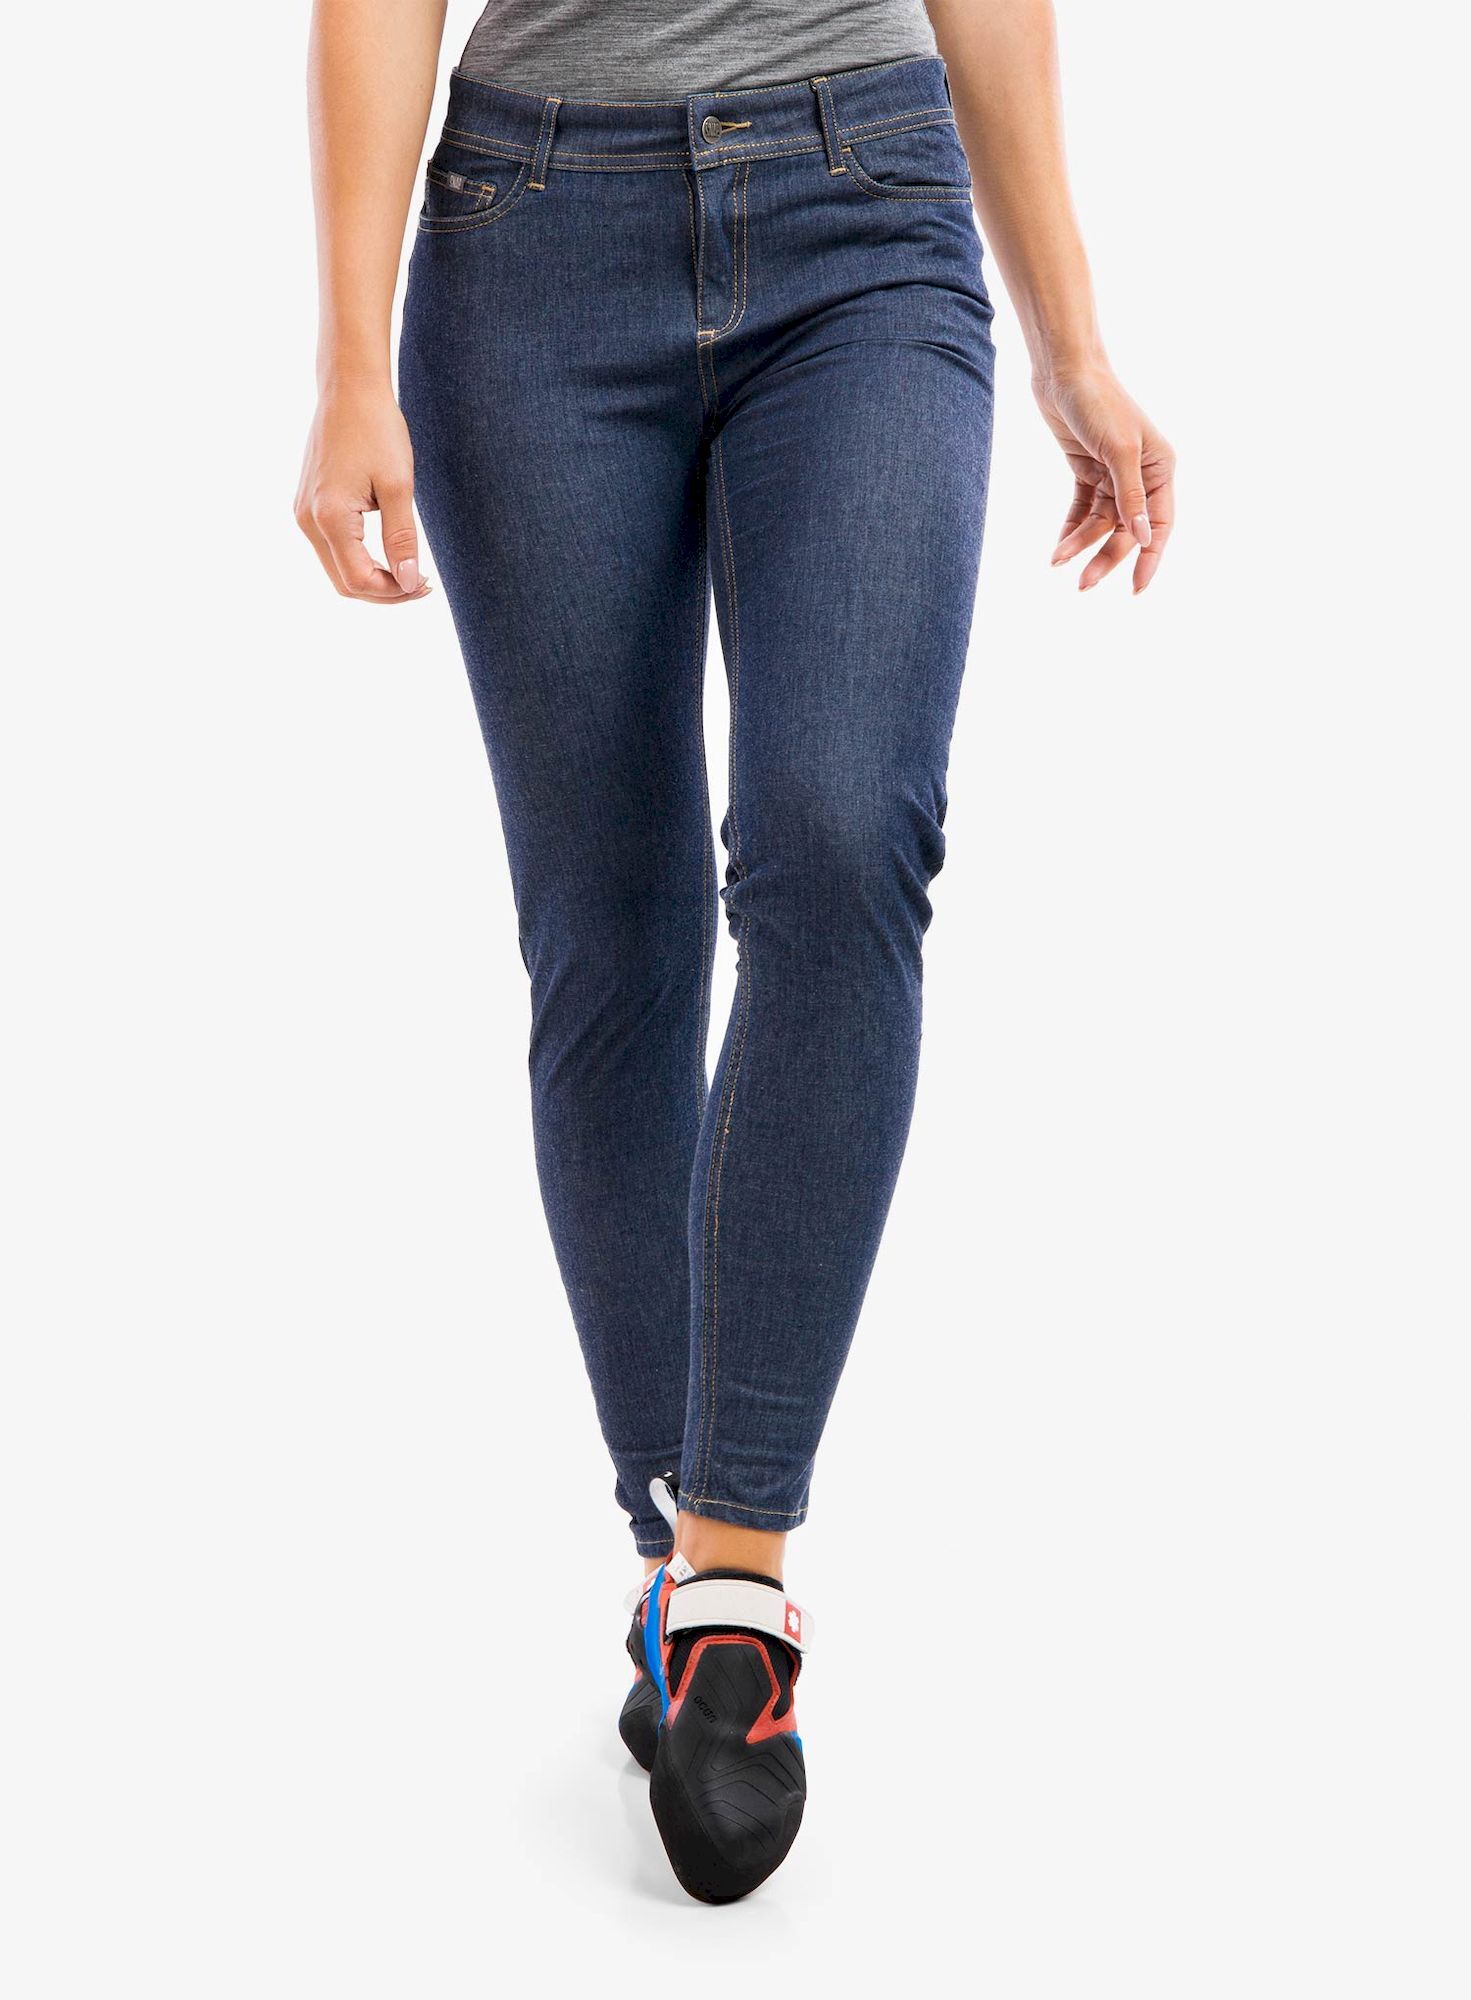 Snap Skinny Jean Pants - Trousers - Women's | Hardloop